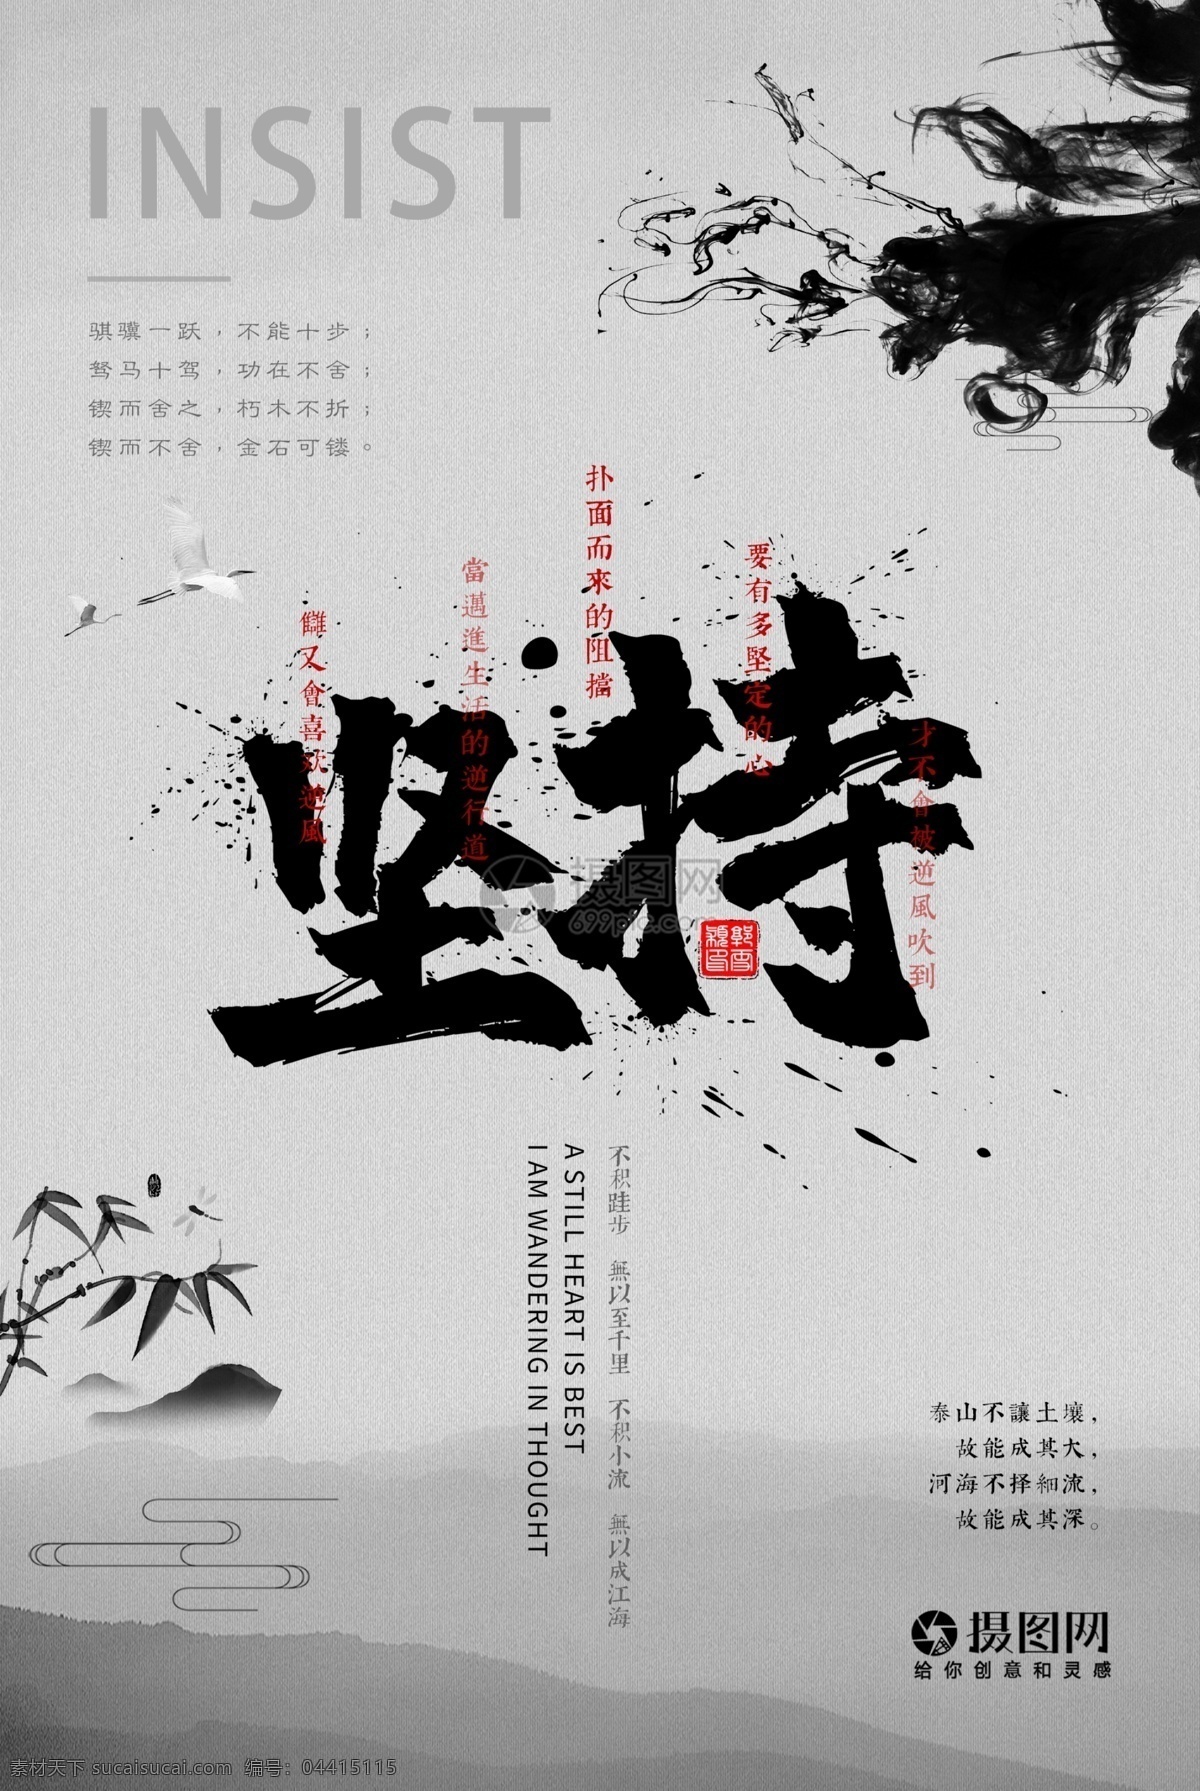 中国 风 企业 文化 坚持 海报 企业文化海报 励志 向上 奋斗 宣传海报 拼搏 标语 梦想 积极行动 超越自我 水墨 正能量 企业文化